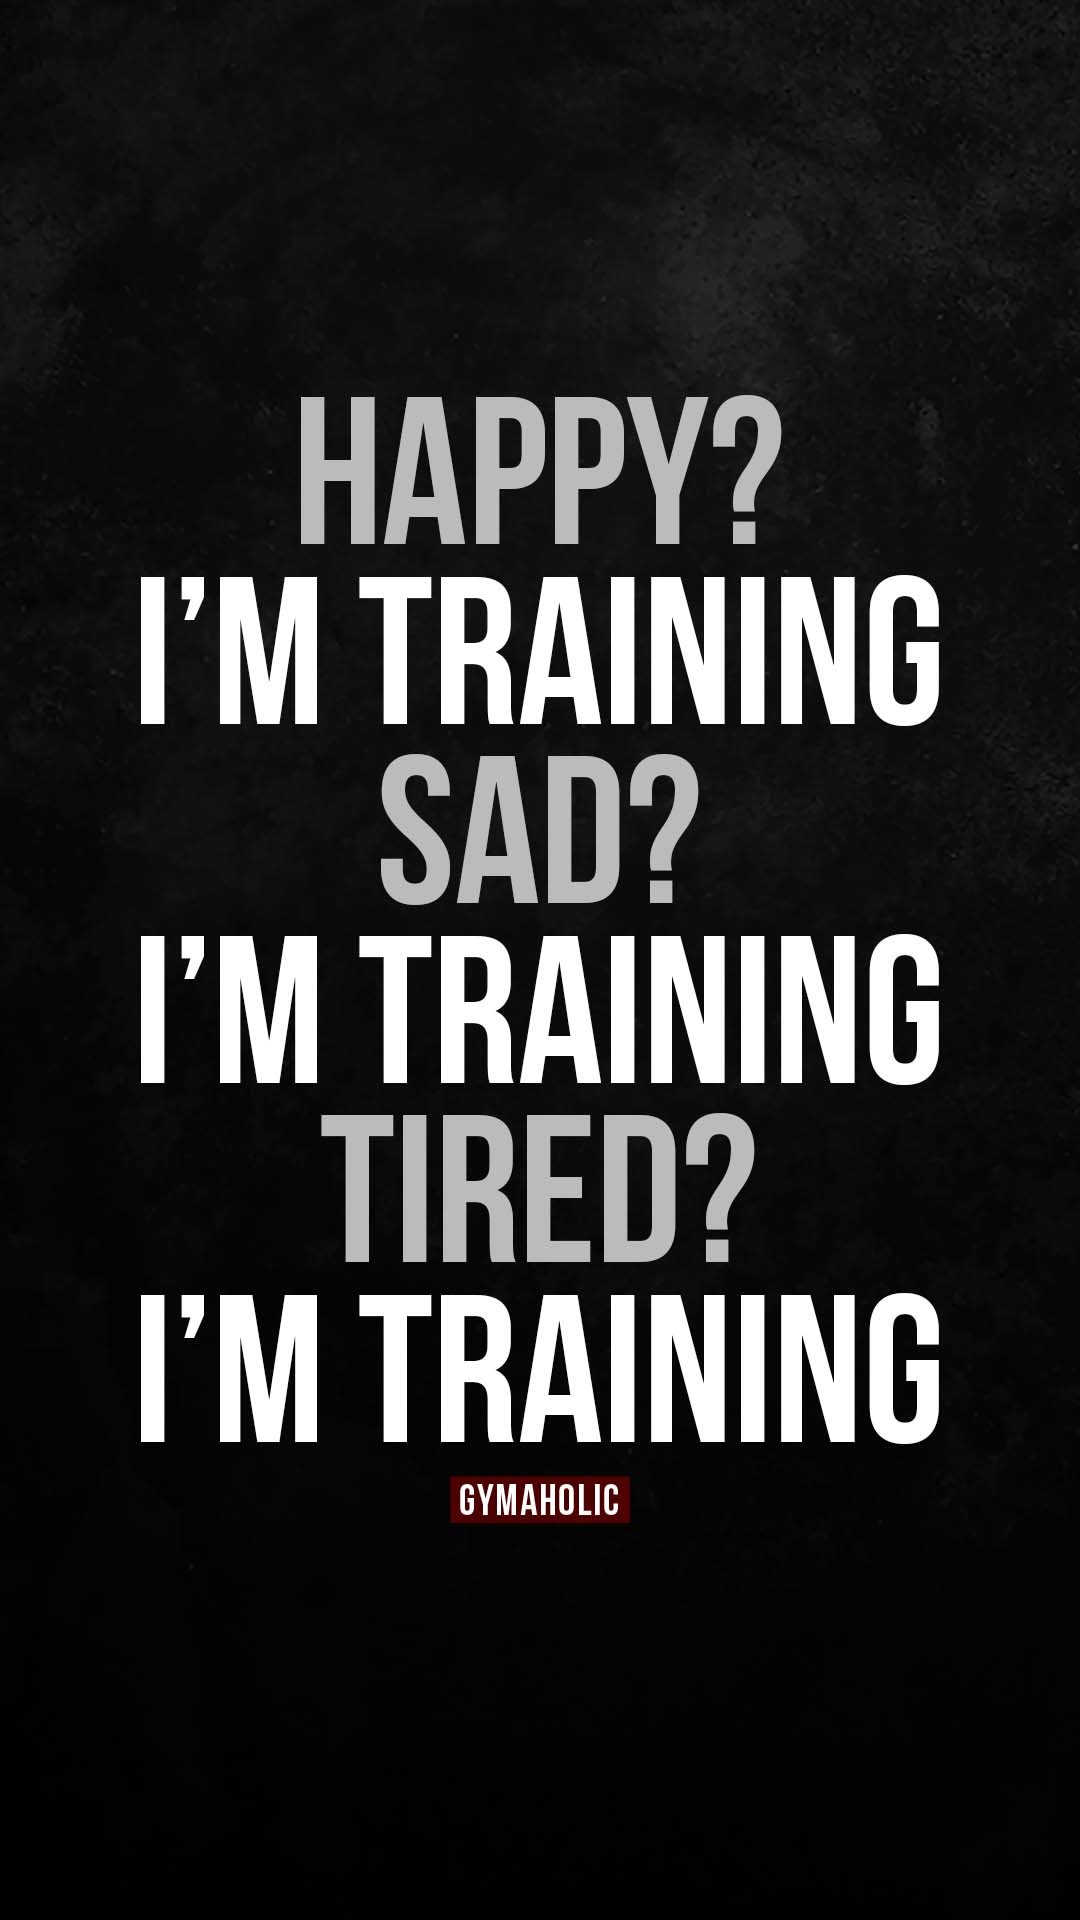 Happy? I’m training. Sad? I’m training. Tired? I’m training